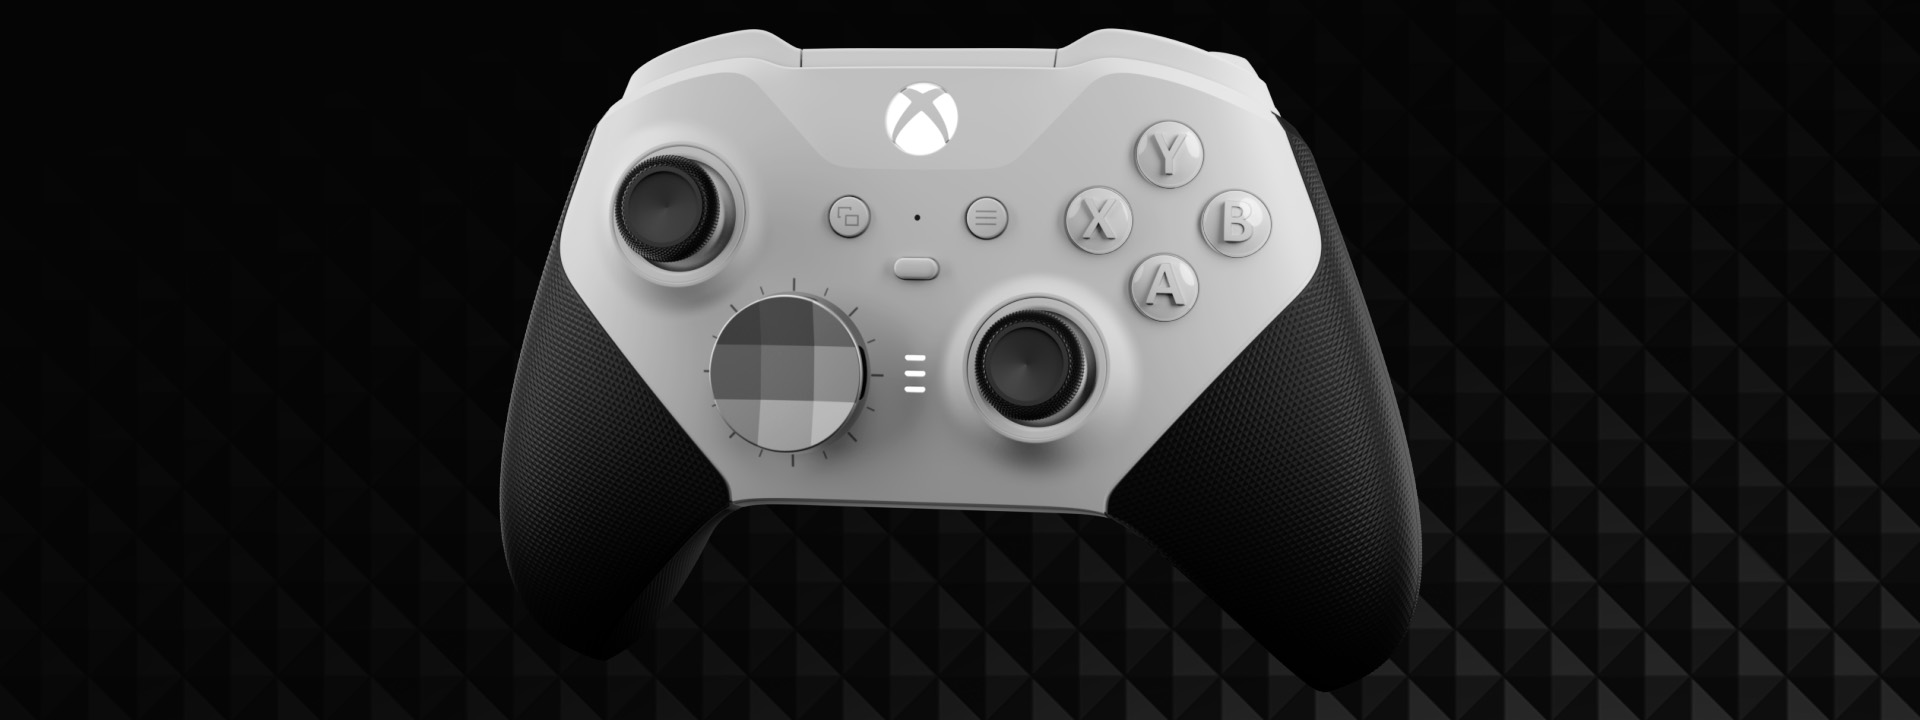 Il controller professionale Xbox Elite Series 2 ora costa meno, grazie al  modello Core